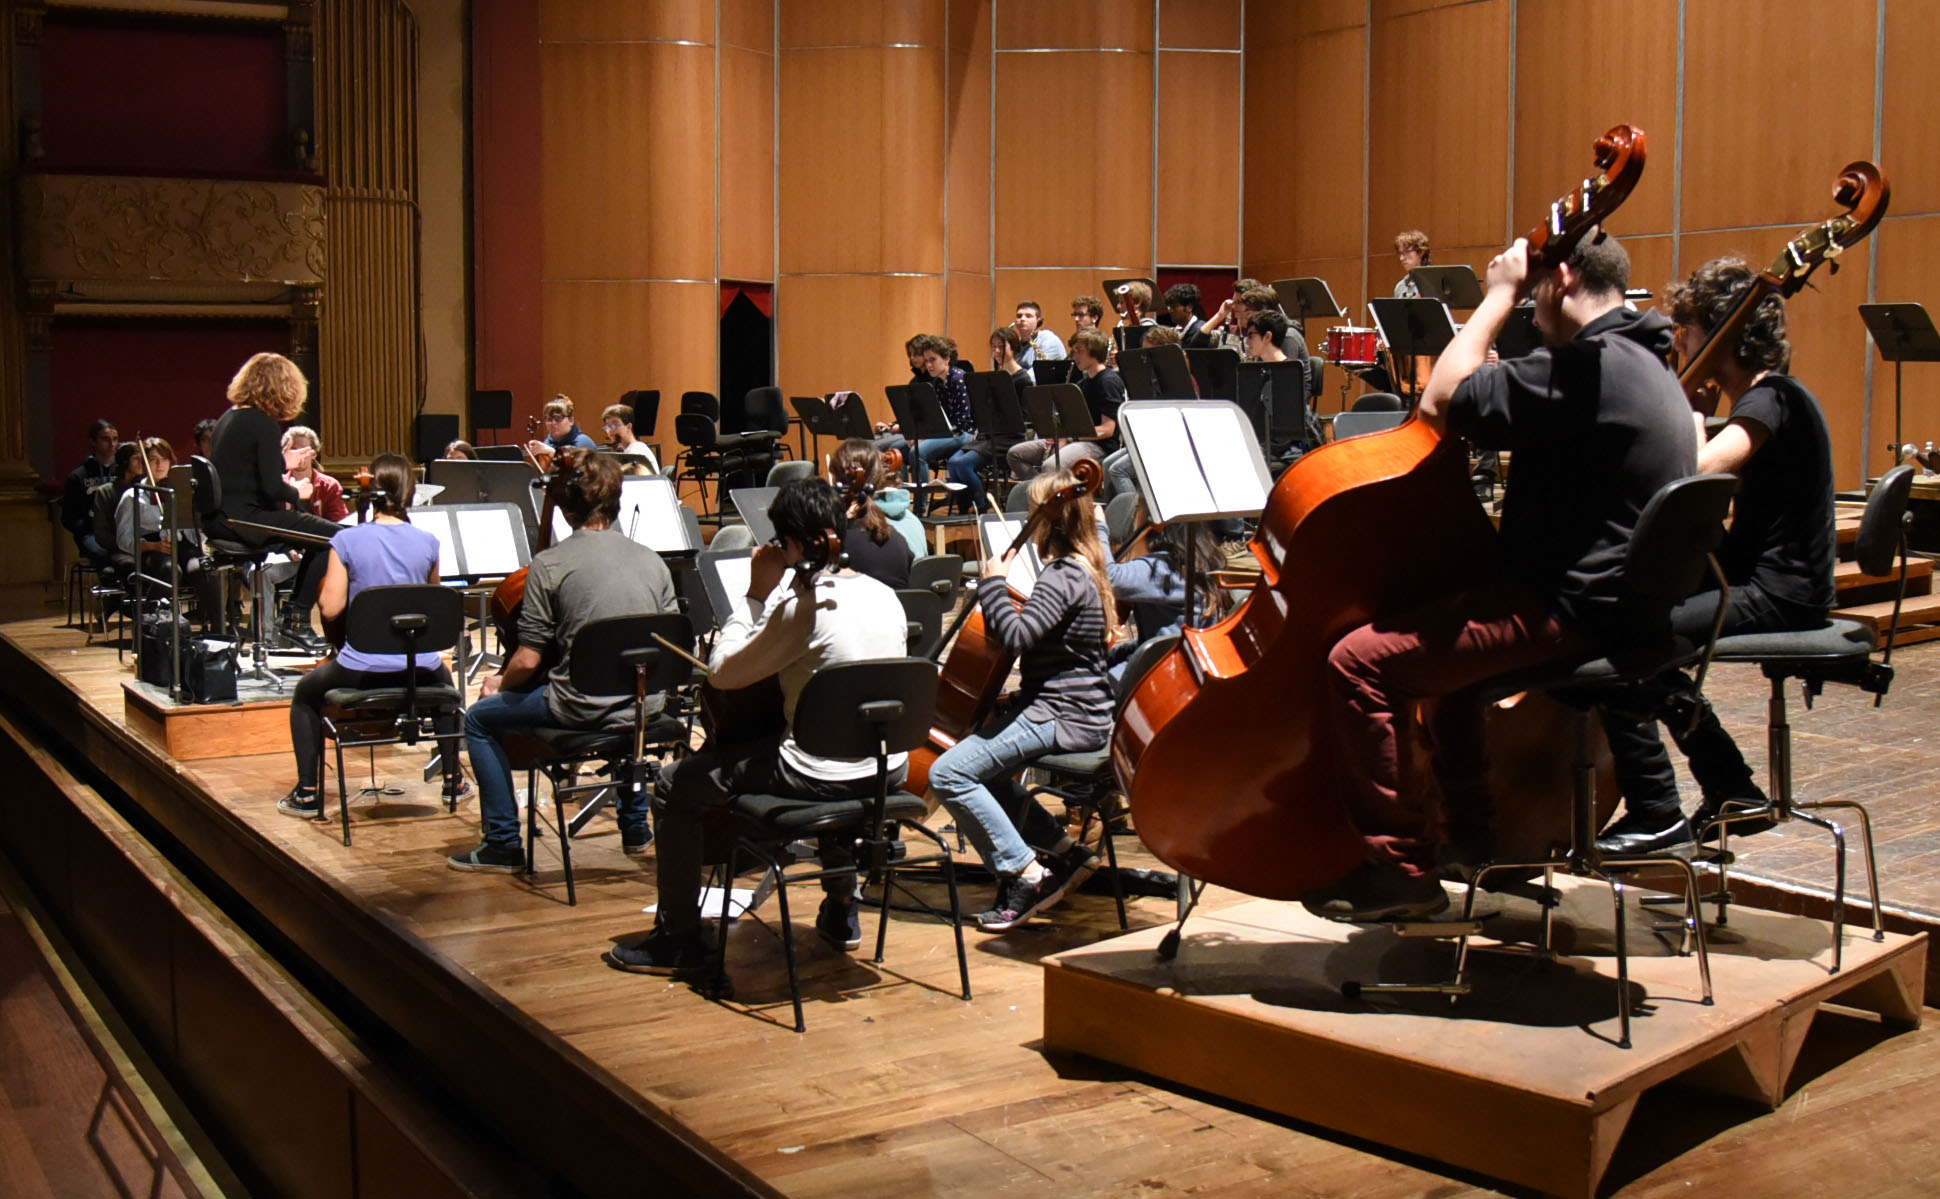 Orchestra regionale toscana, audizioni per musicisti